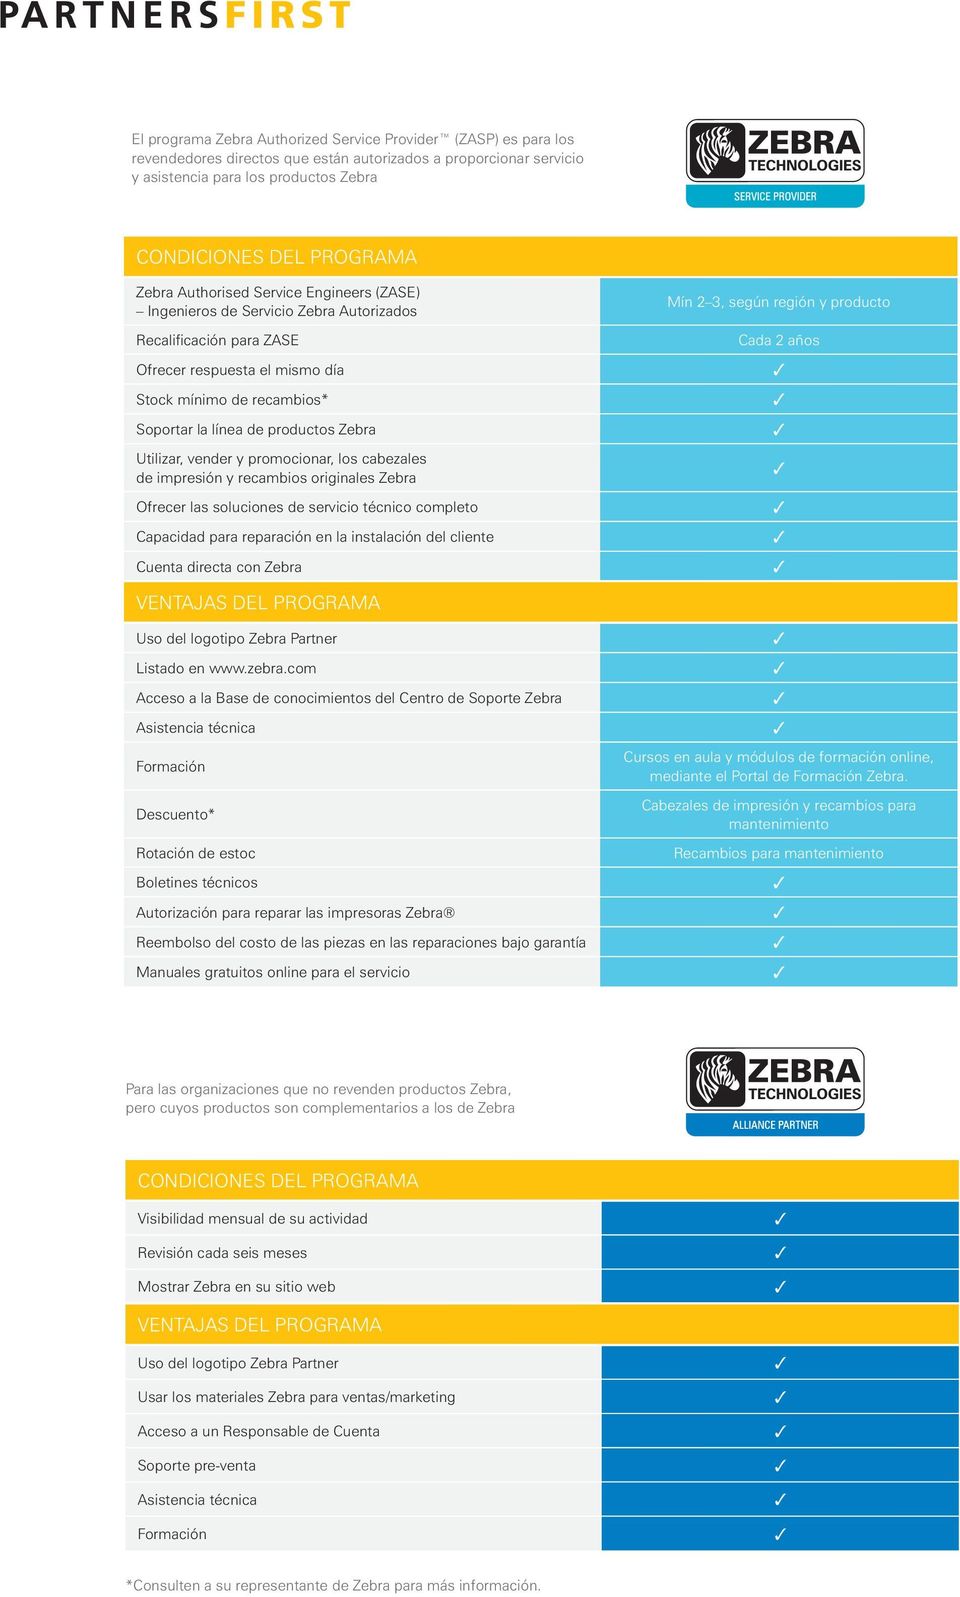 la línea de productos Zebra 3 Utilizar, vender y promocionar, los cabezales de impresión y recambios originales Zebra Ofrecer las soluciones de servicio técnico completo 3 Capacidad para reparación